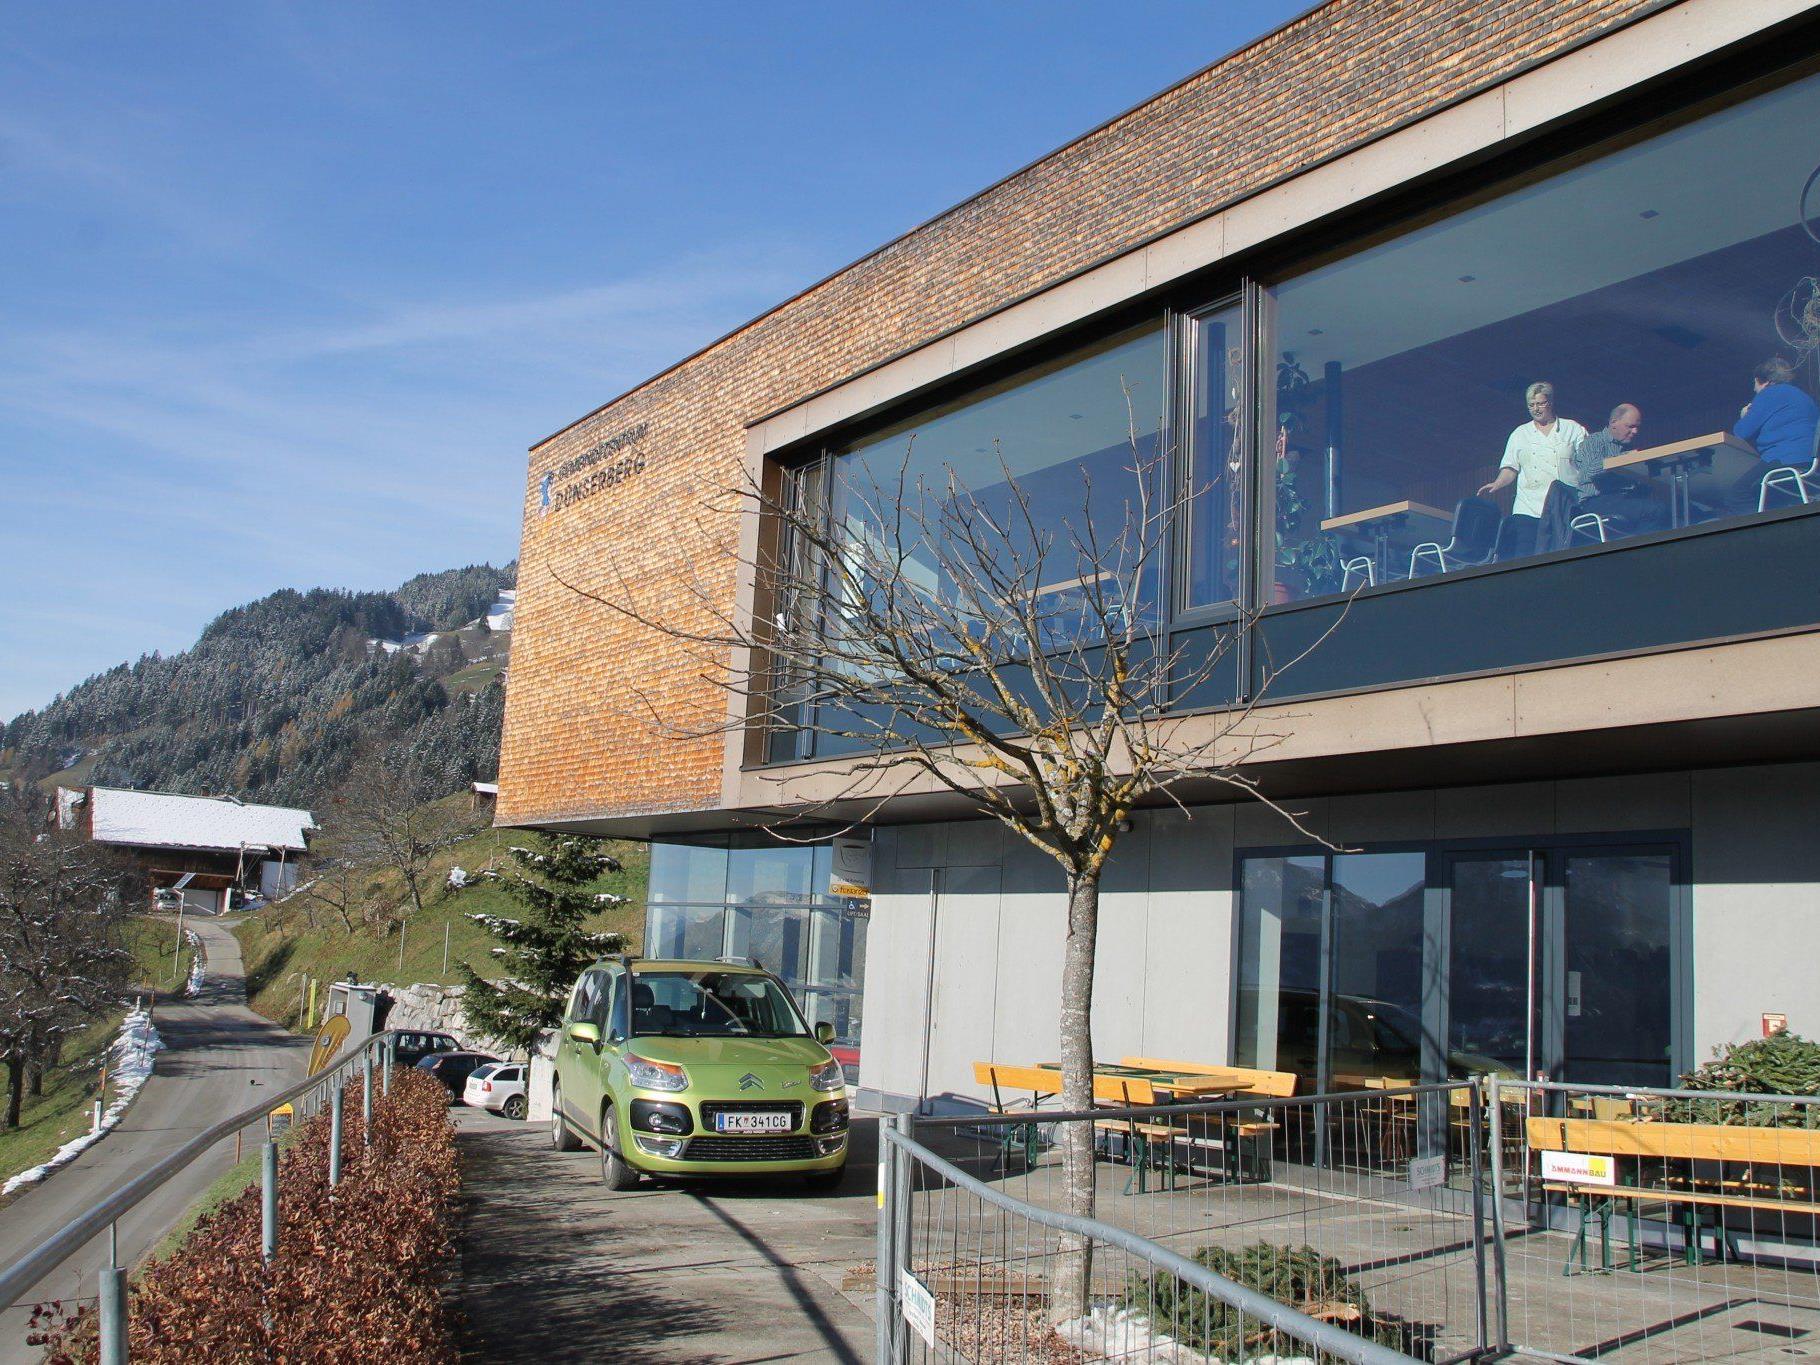 Der Gemeindesaal Dünserberg erhält eine neue Sonnenterrasse. Das Fundament wurde bereits gesetzt.